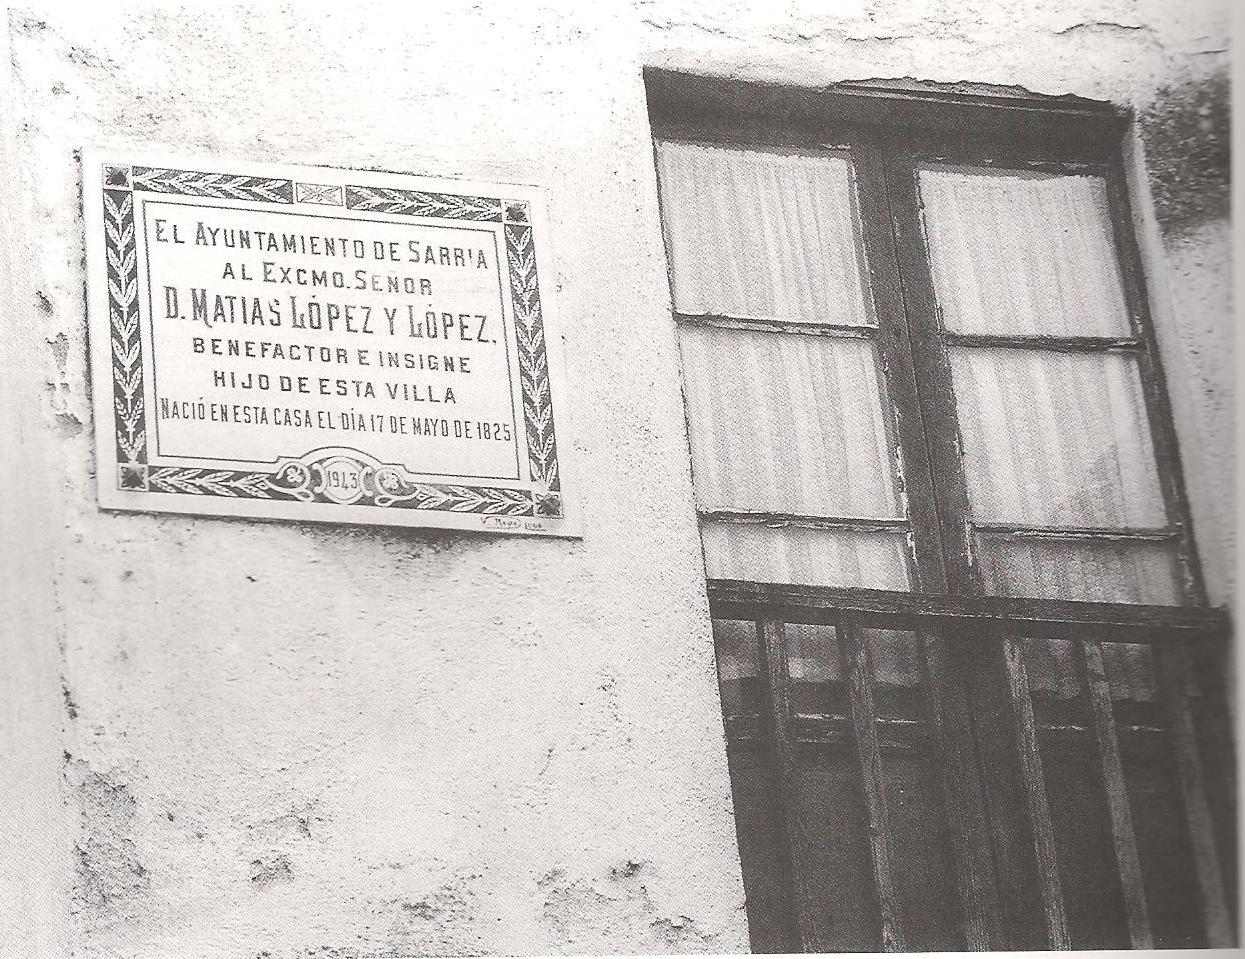 Placa en la fachada de su casa natal de Sarria. https://es.wikipedia.org